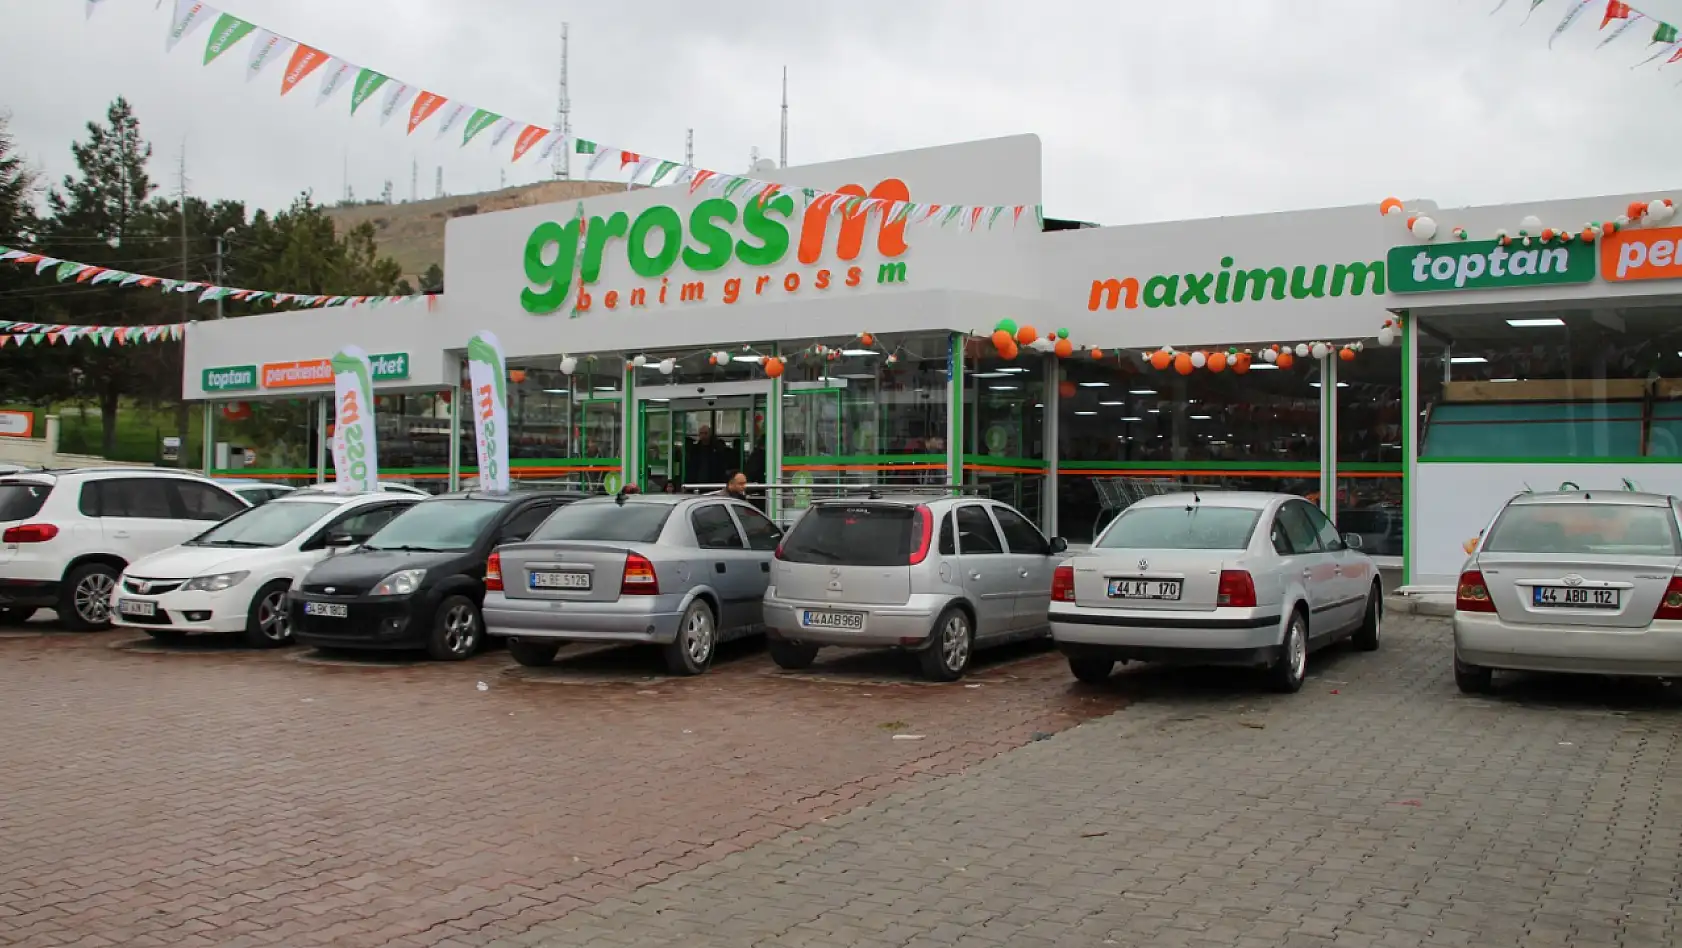 Grossm Market Malatyalılara Kapılarını Açtı!